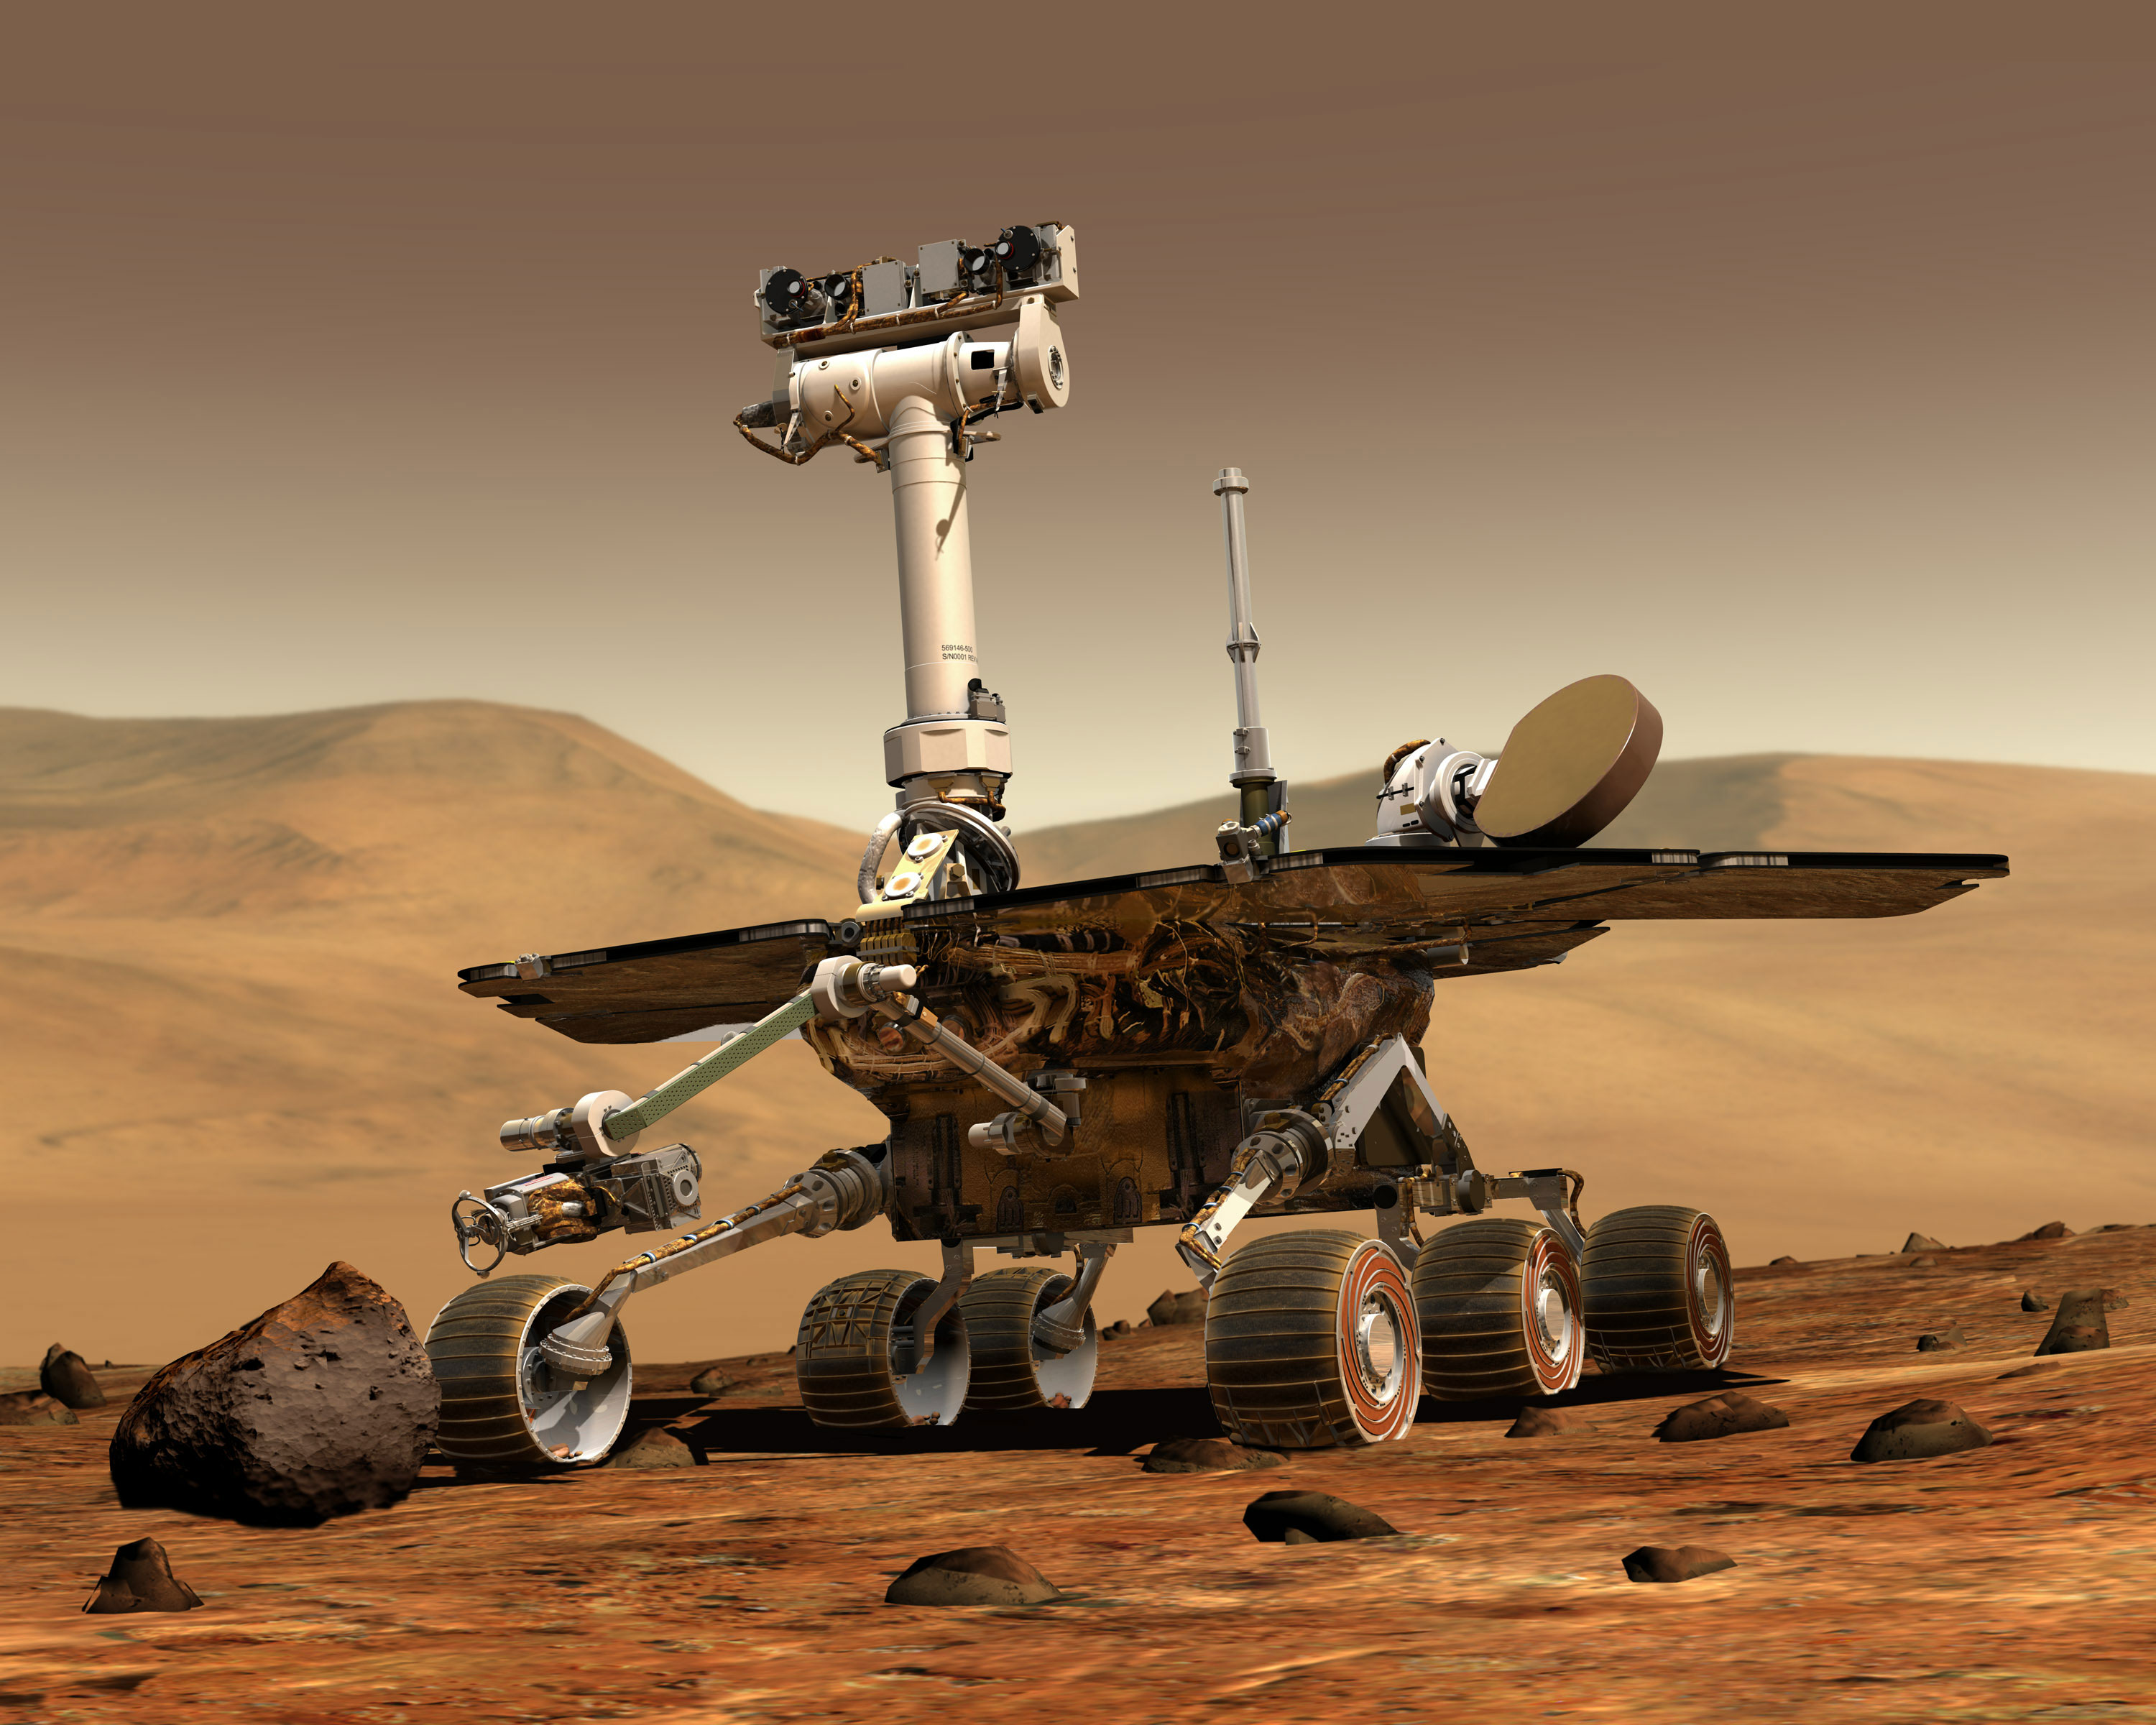 Mars rover; from NASA